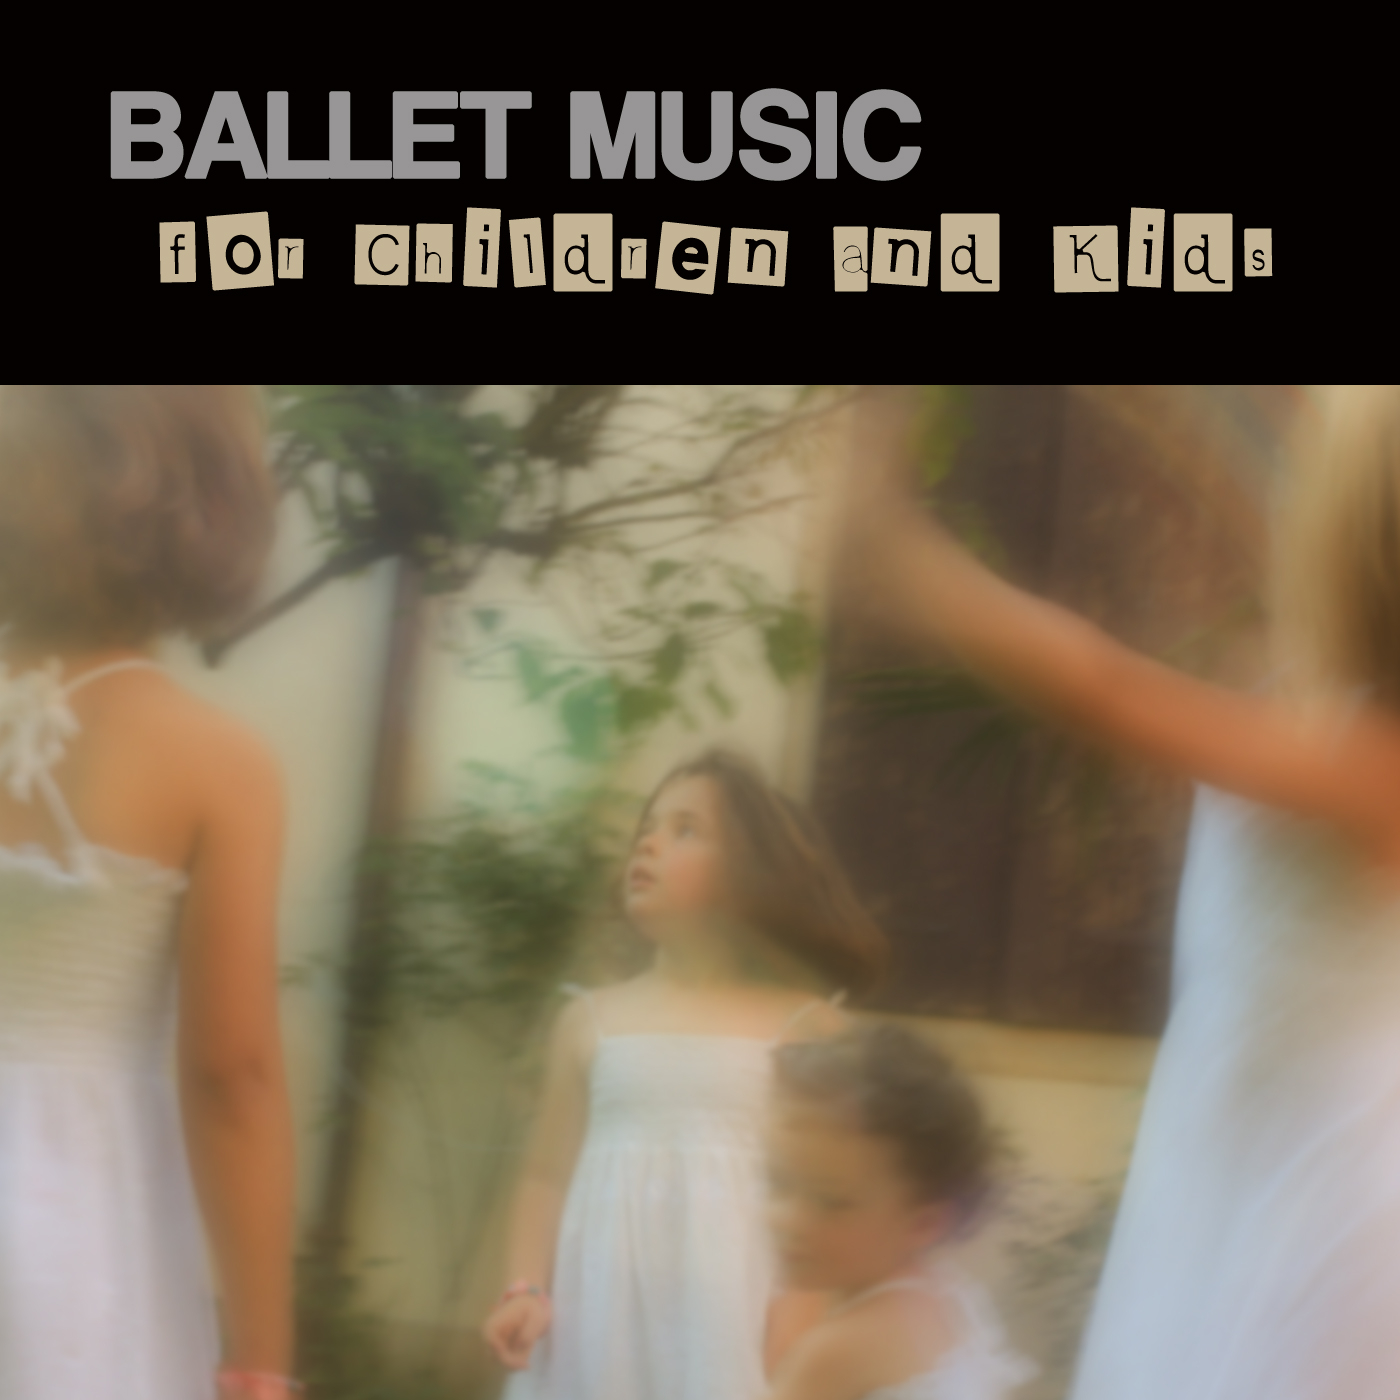 Brahms's Lullaby - Ballet for Children